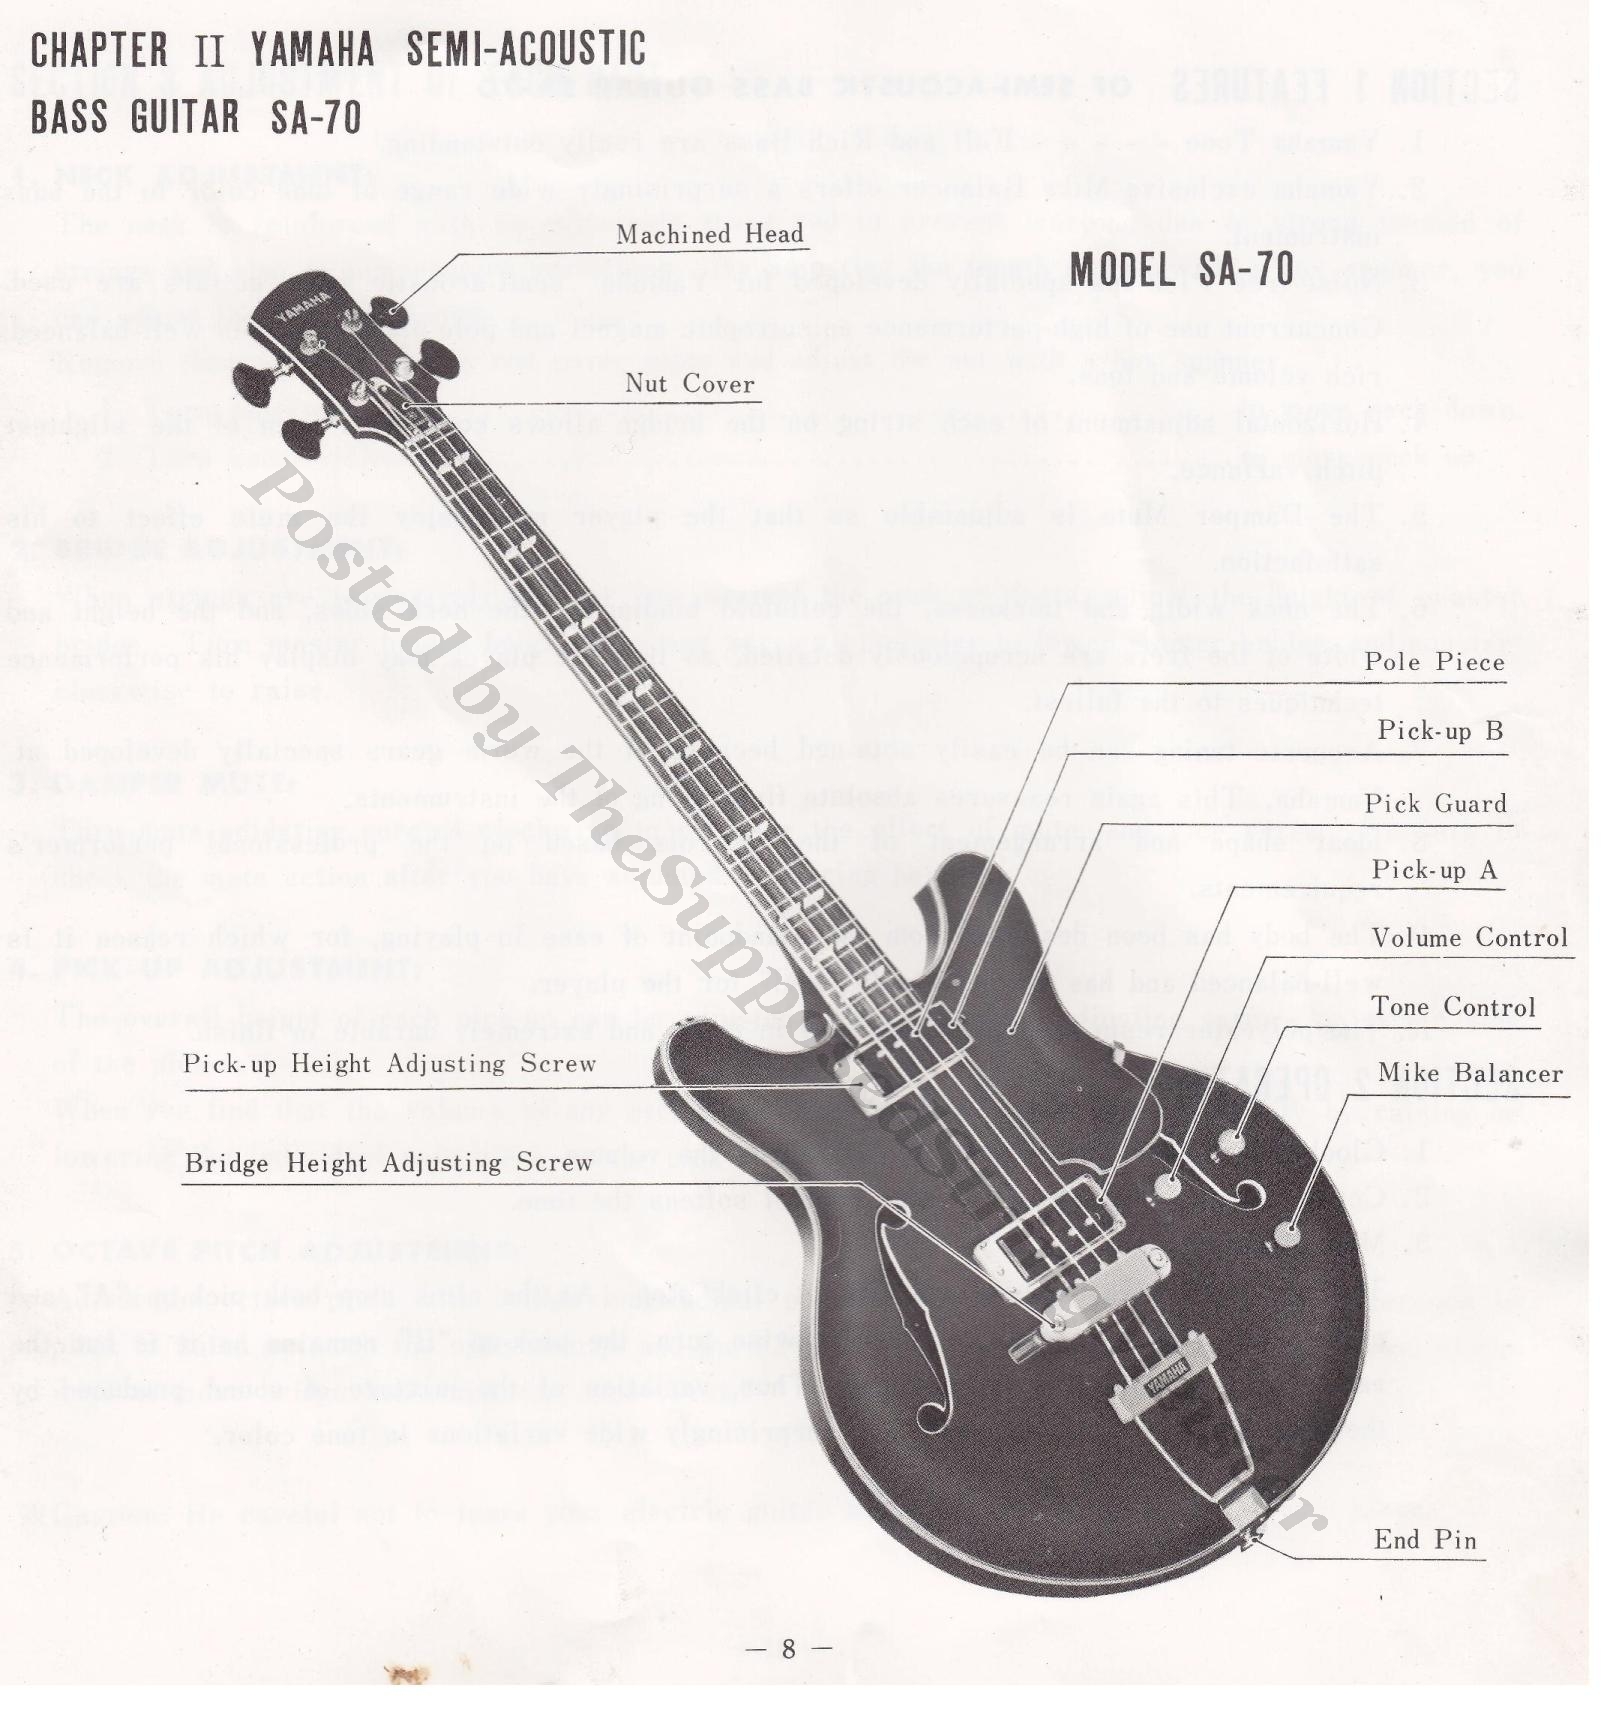 SA-70 (Yamaha Guitar Booklet Page 8 - Layout) full